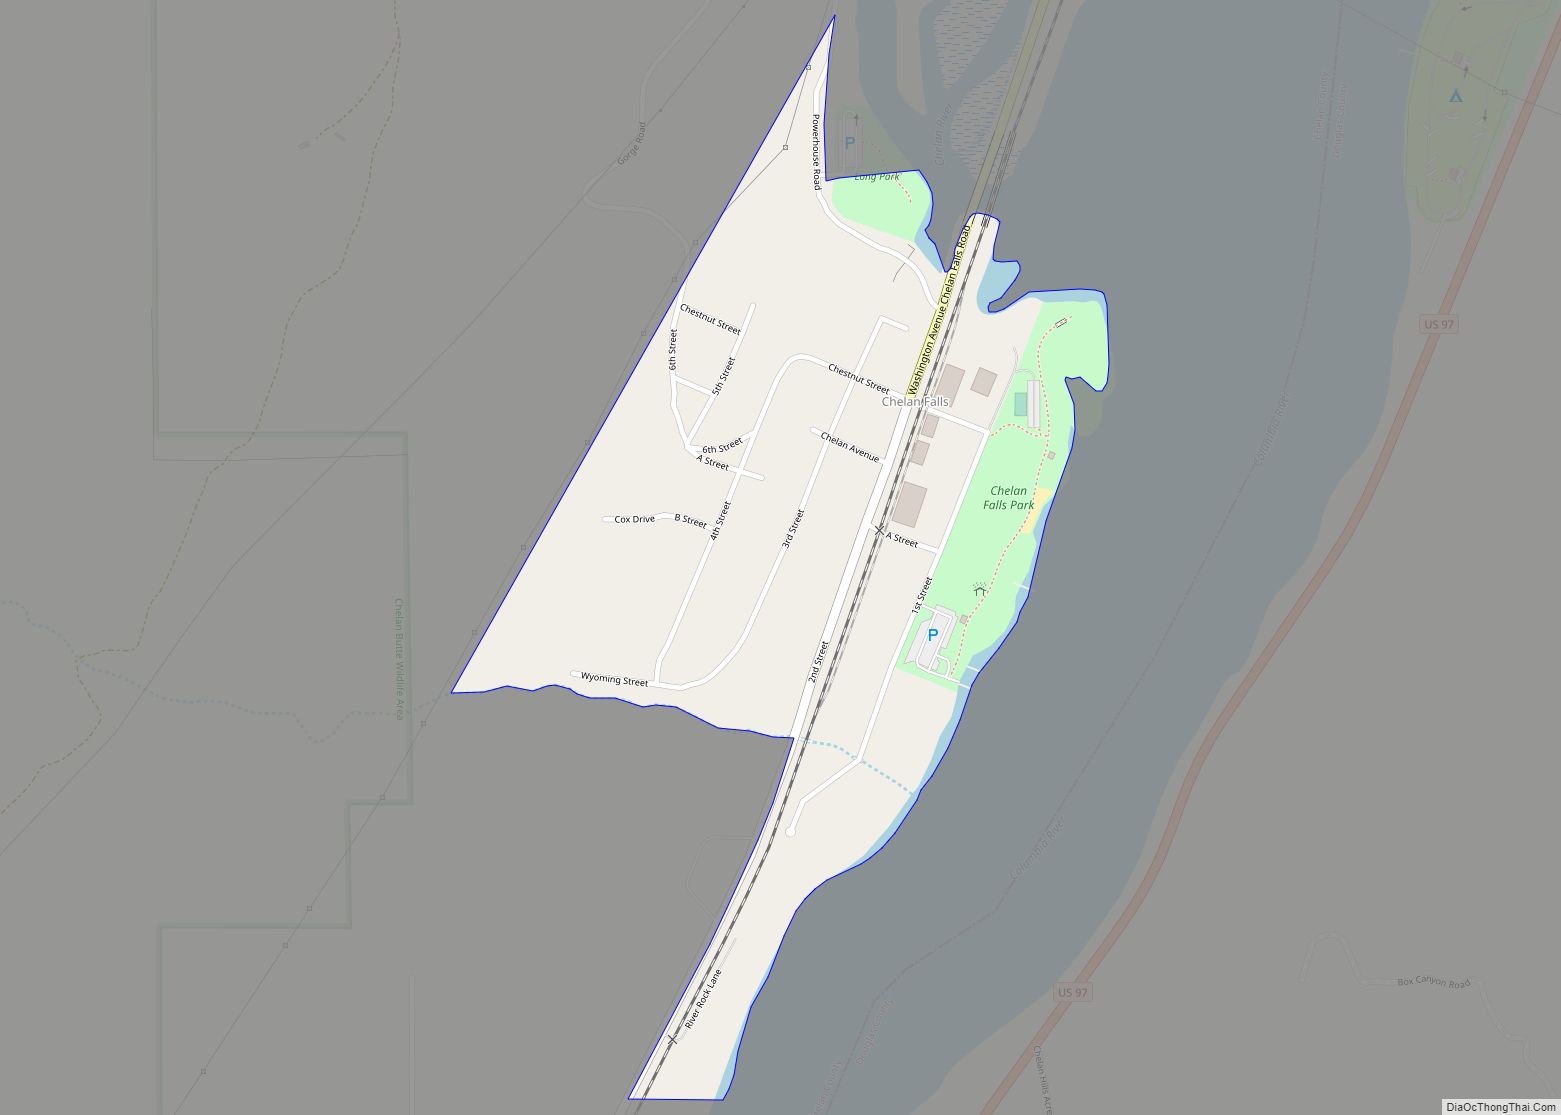 Map of Chelan Falls CDP